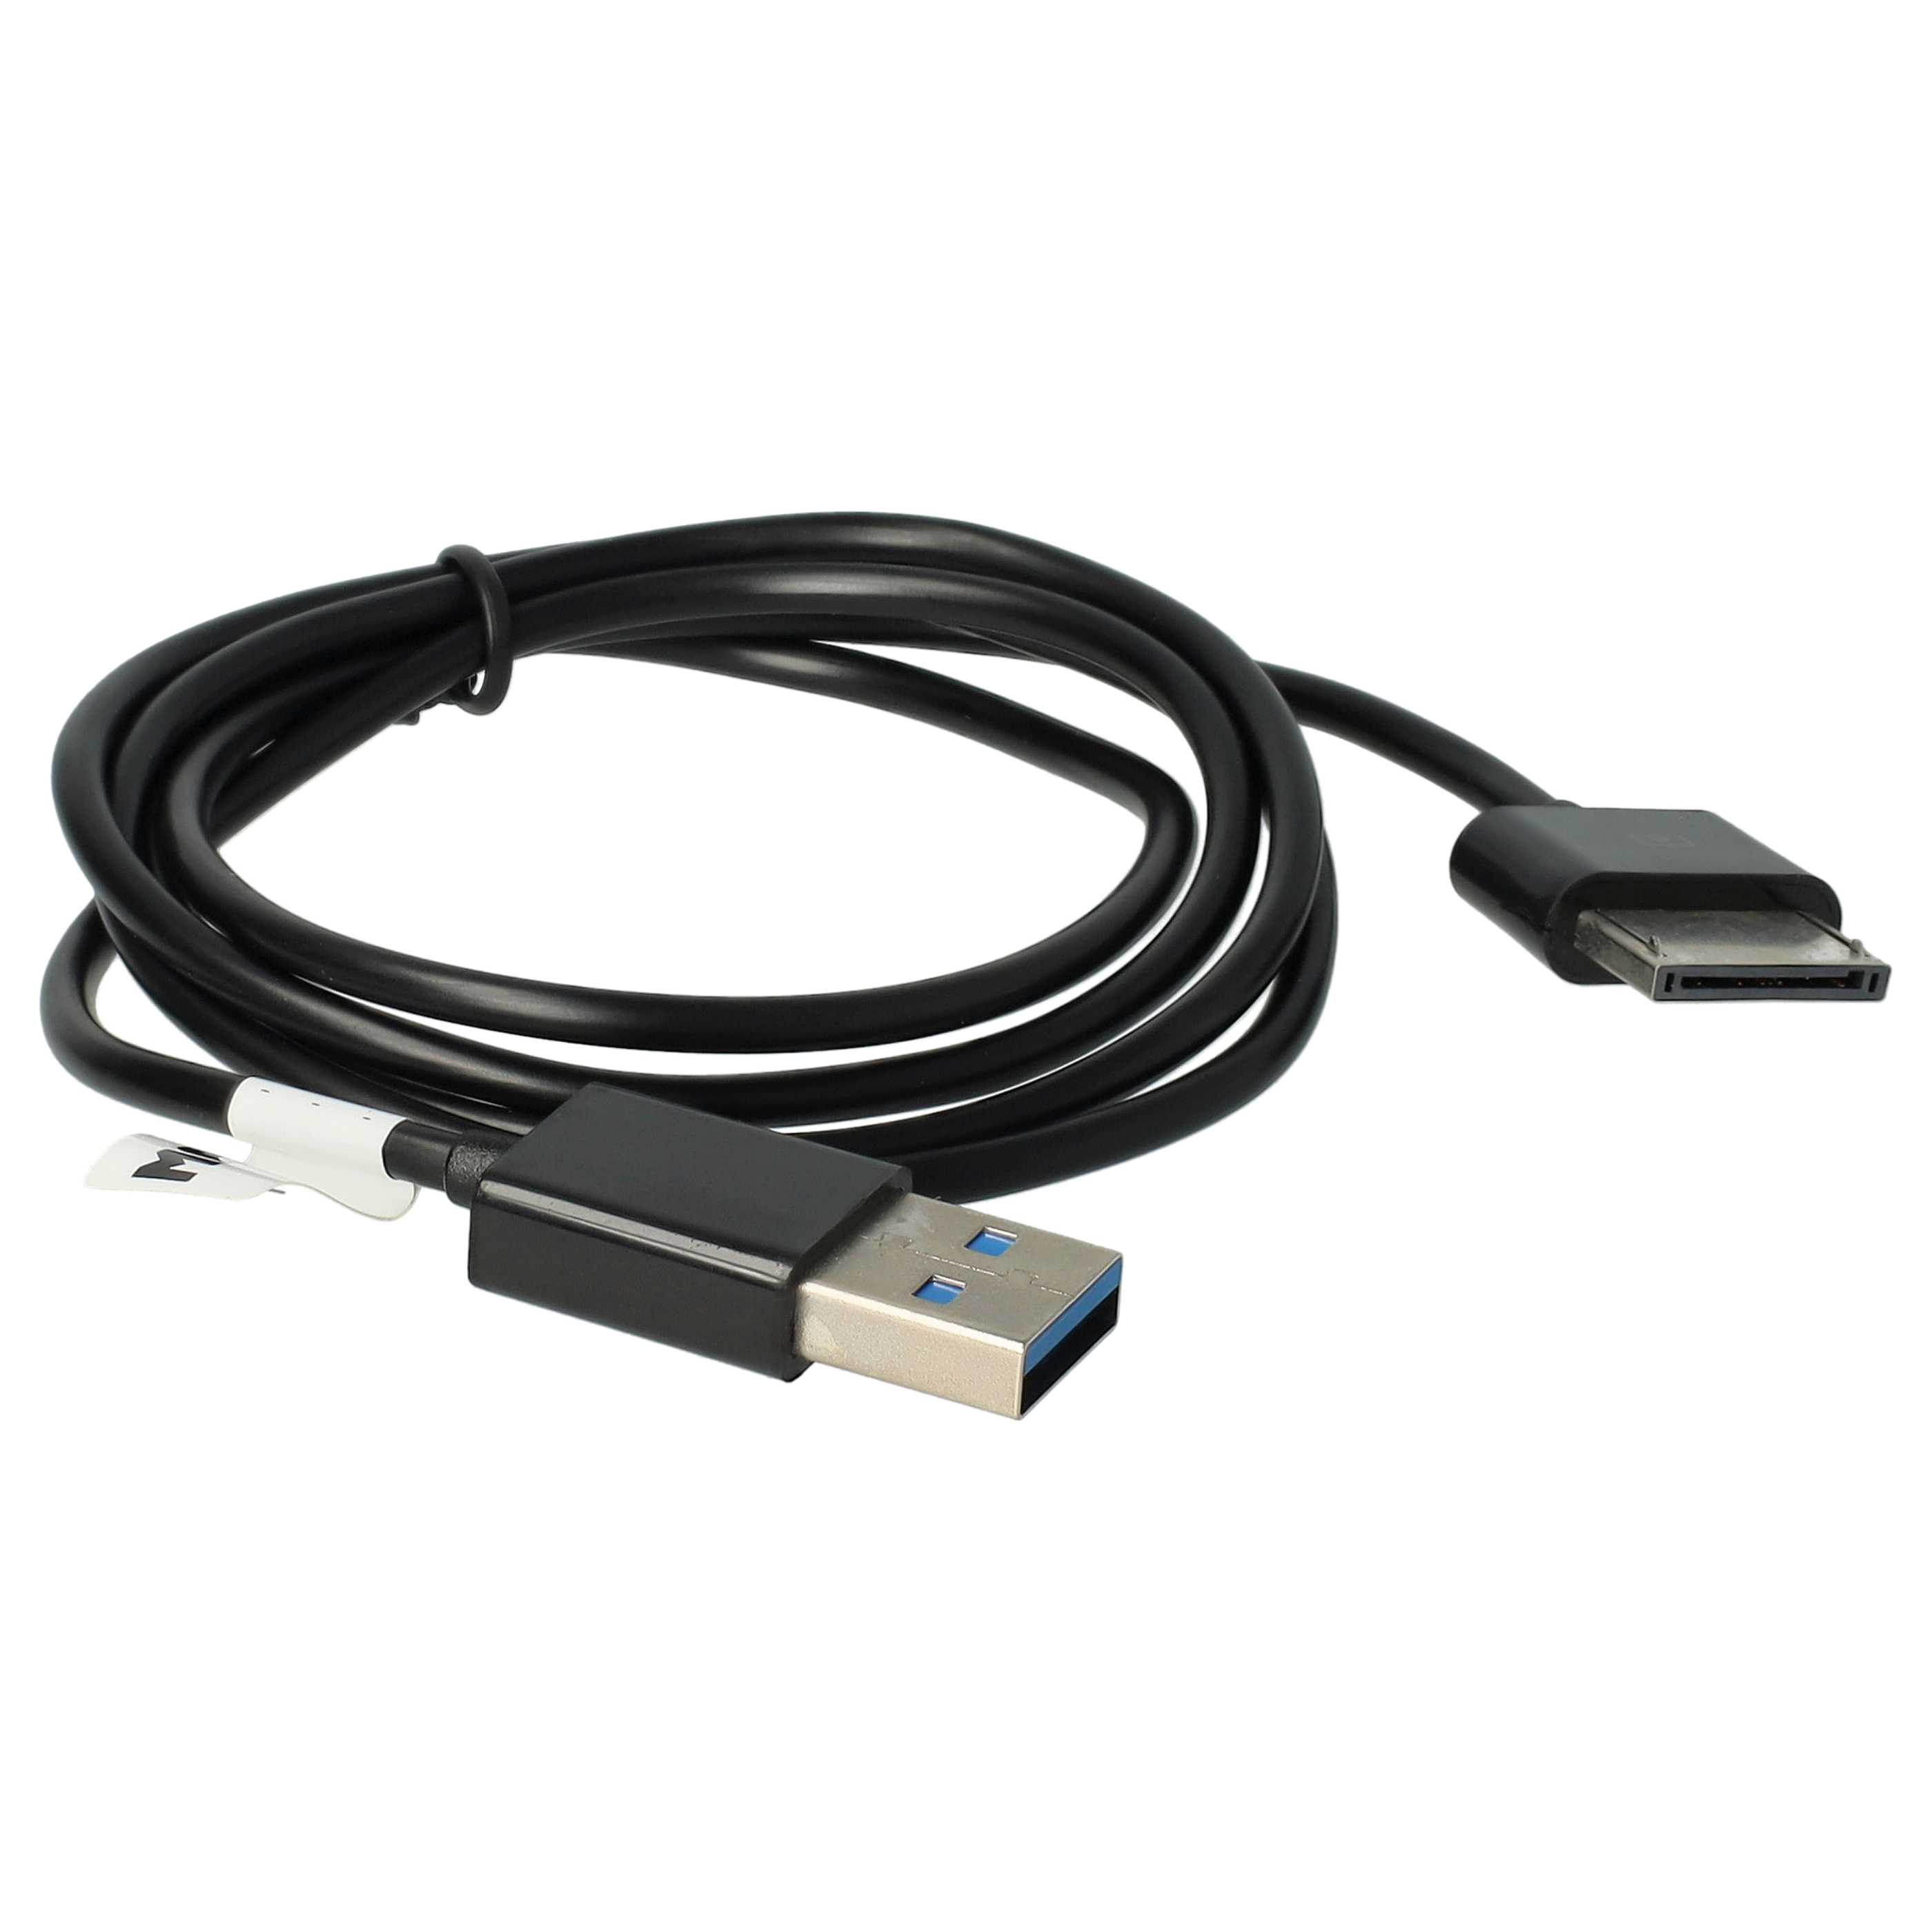 Cable de datos USB para tablet Asus Transformer Pad Infinity - cable de carga 2en1, 100cm